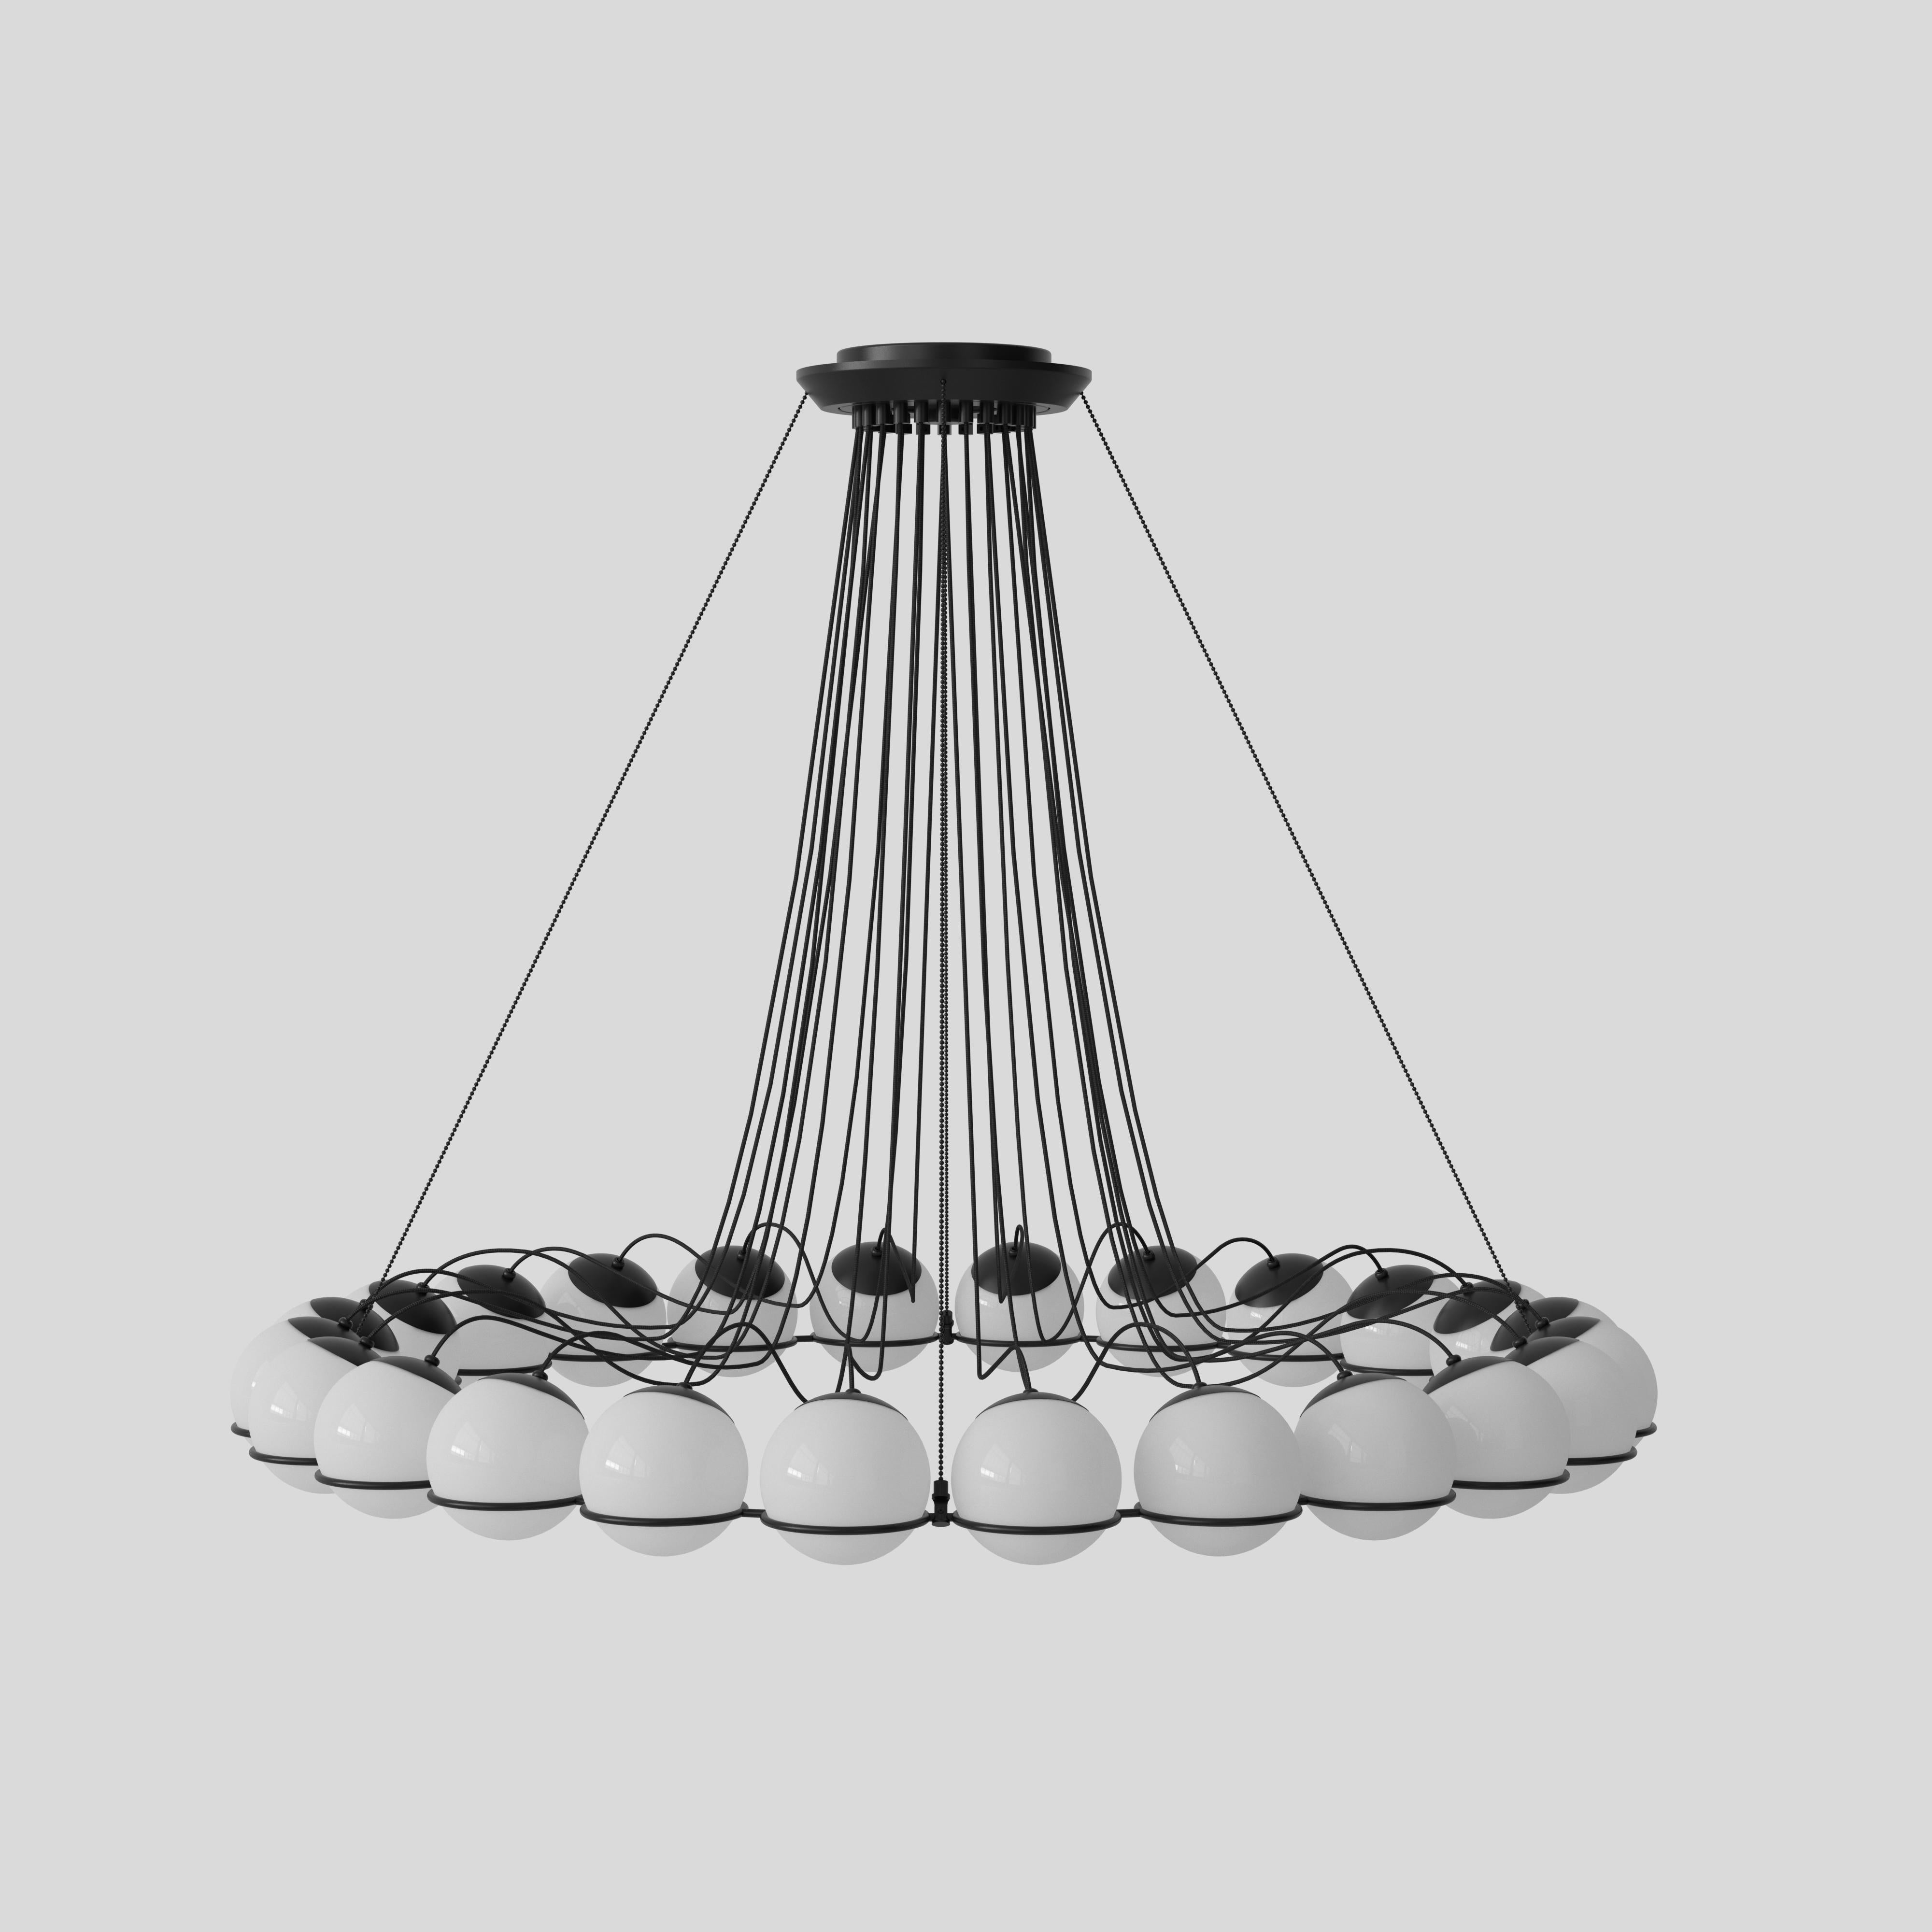 Modèle 2109
Design par Gino Sarfatti
Le lustre Le Sfere est composé d'un ensemble circulaire de sphères en verre opalin soufflé. Chaque sphère est maintenue en place par une grande structure annulaire en aluminium peint en noir ou en champagne.